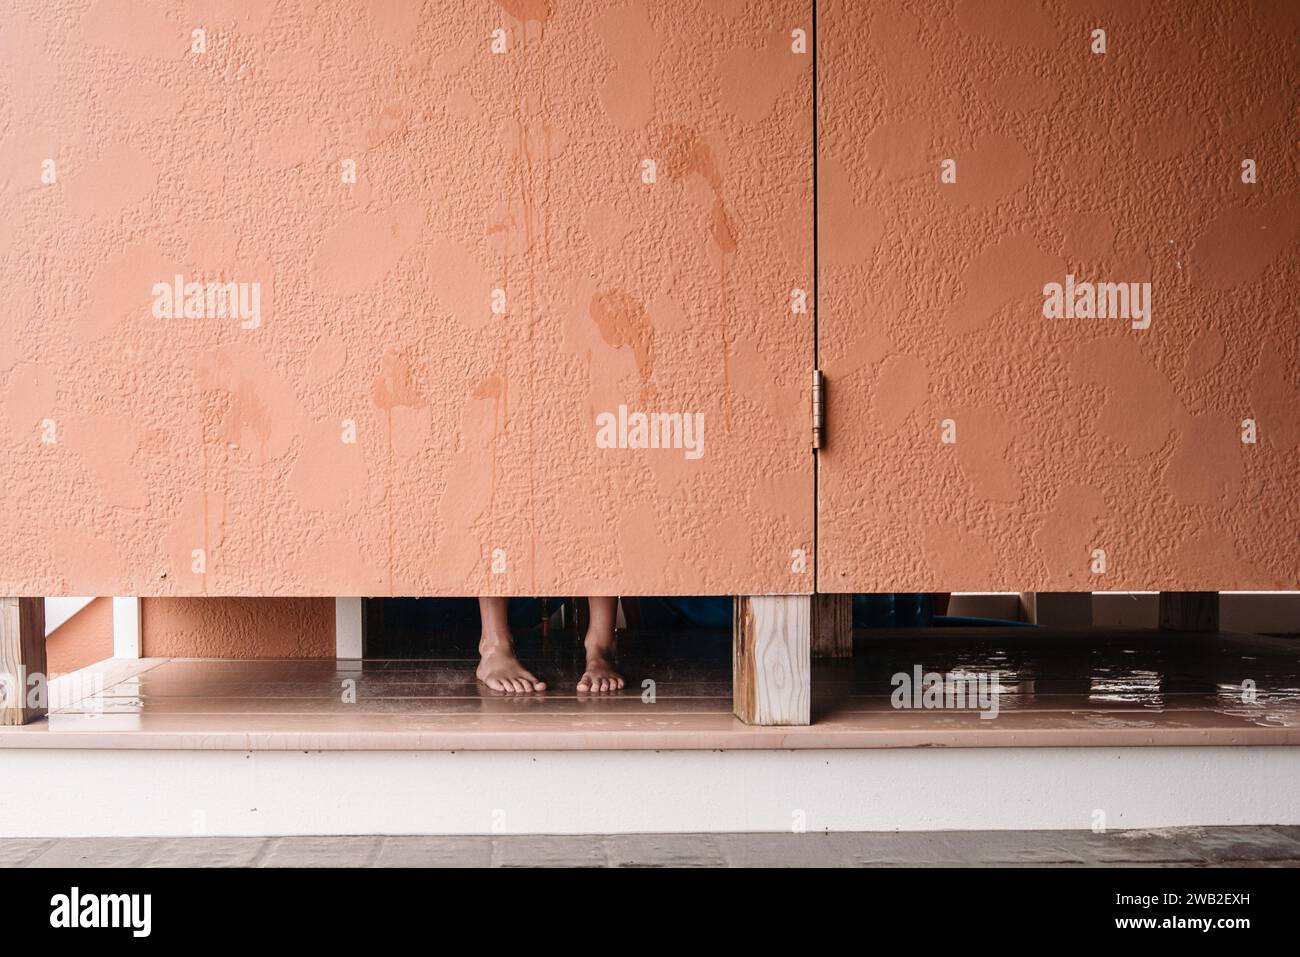 Feet visible under stall door of outdoor shower Stock Photo